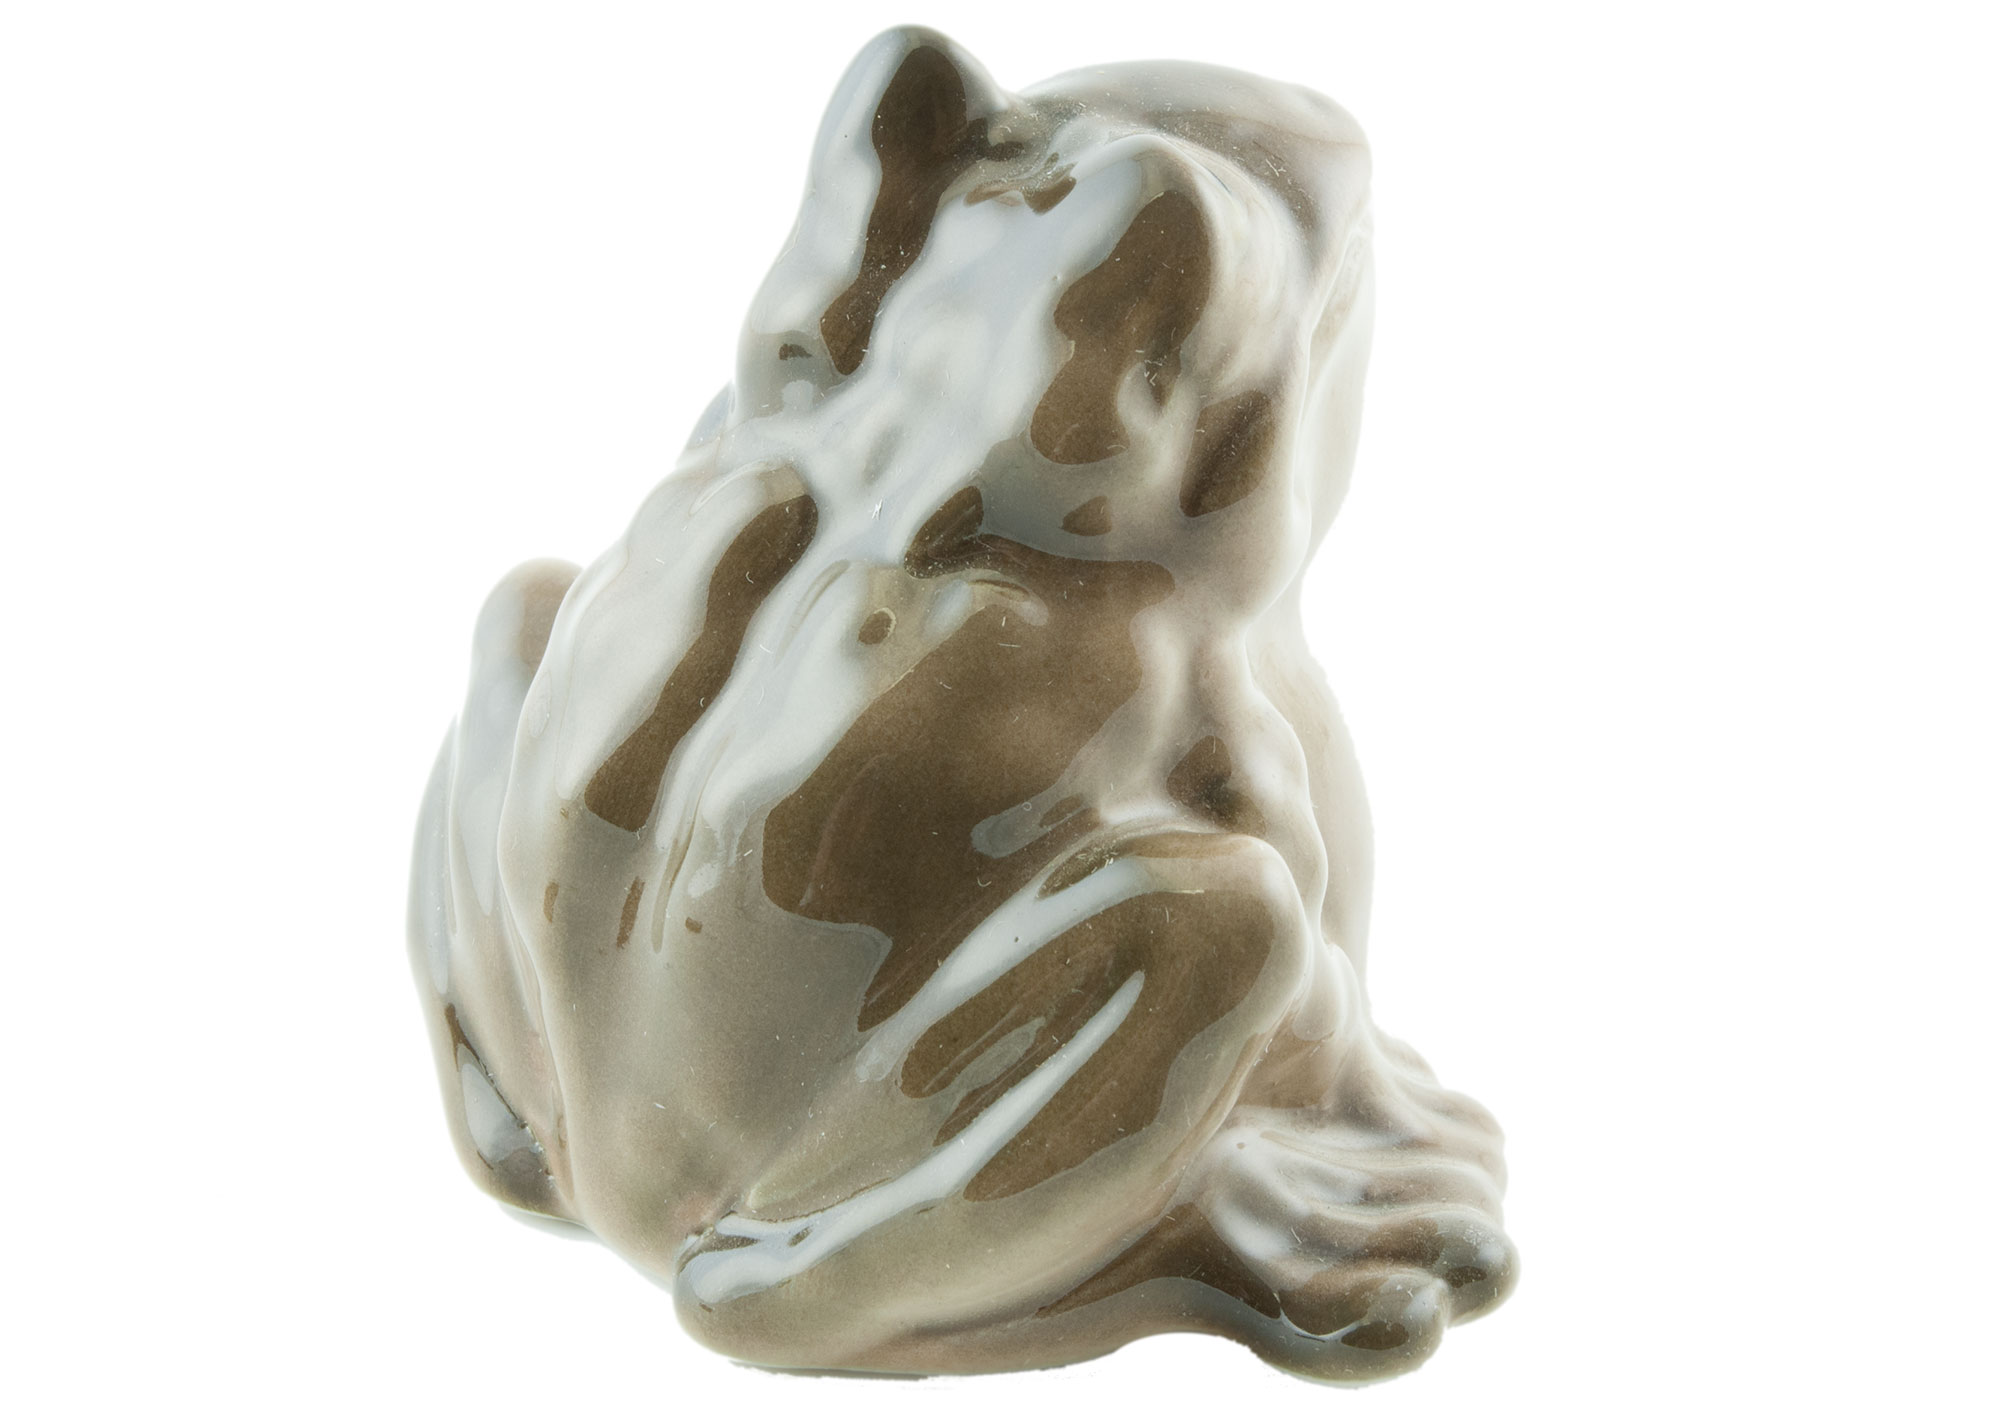 Buy Frog Porcelain Figurine at GoldenCockerel.com